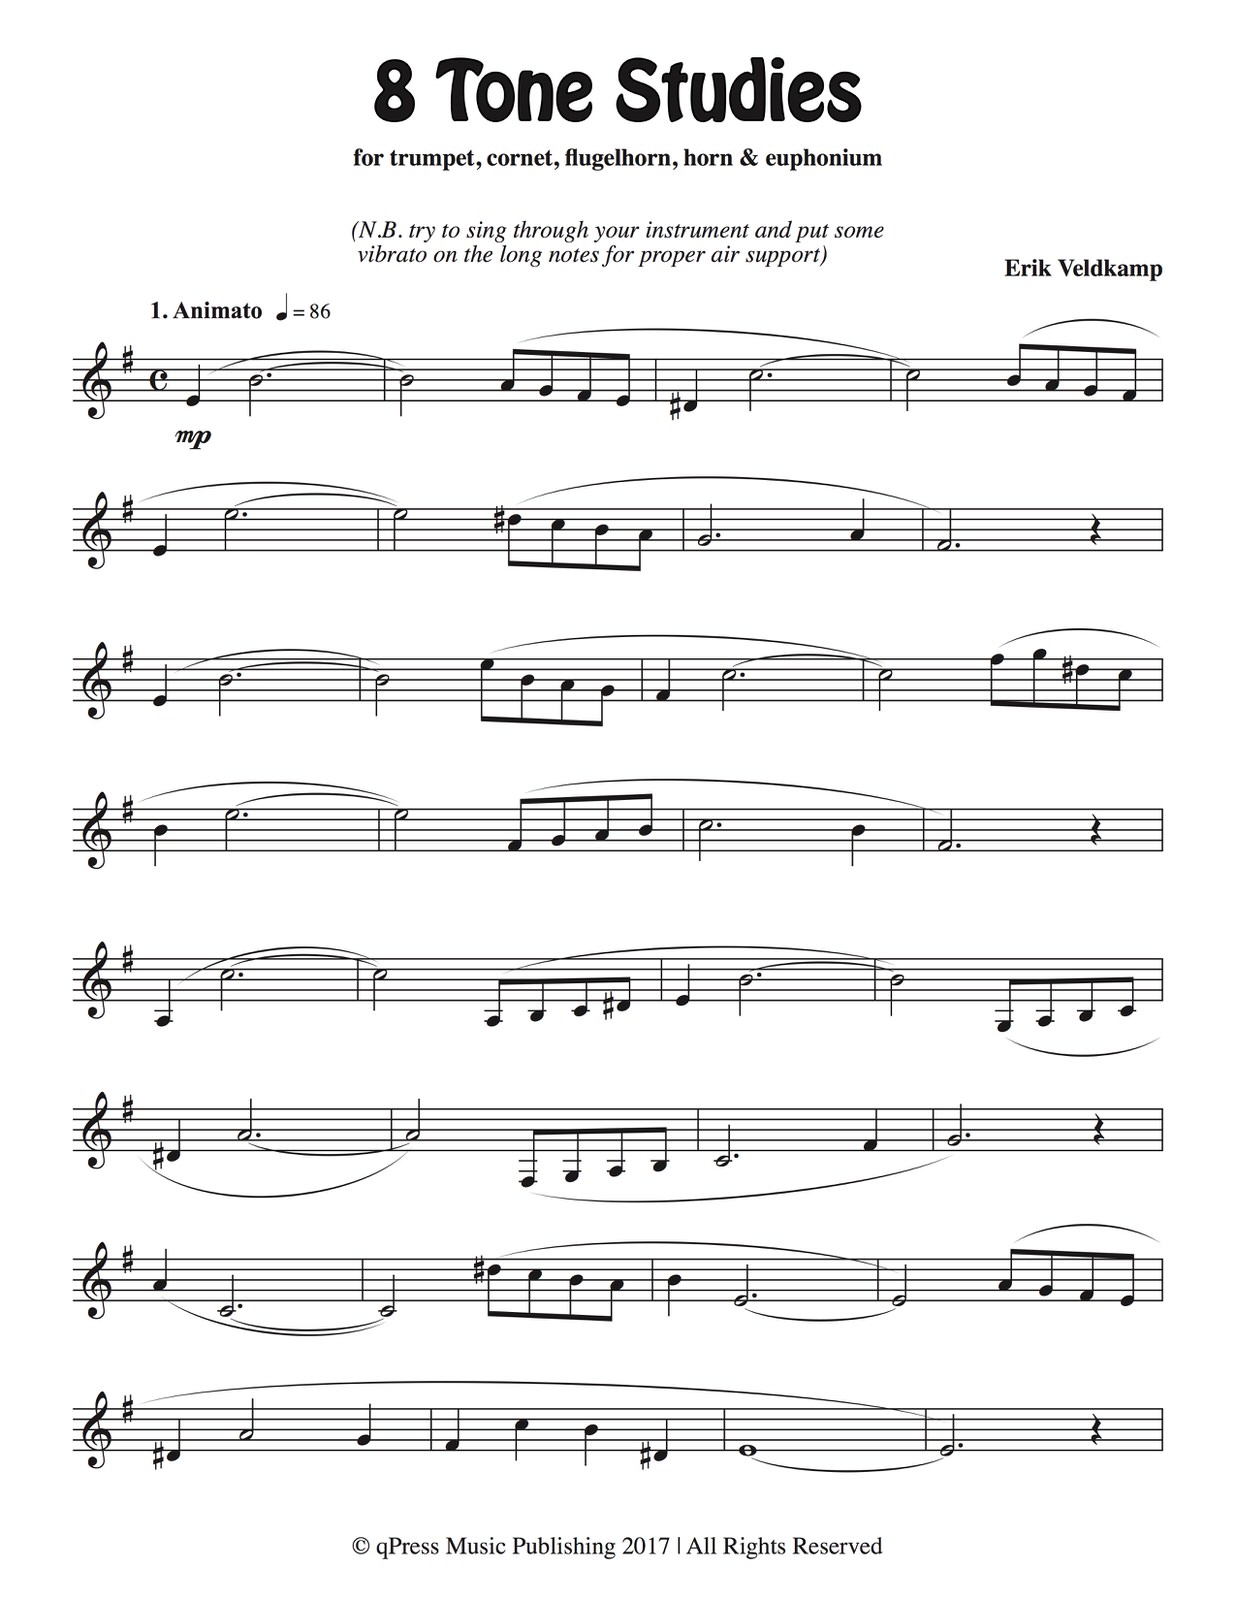 cichowicz trumpet flow studies pdf file